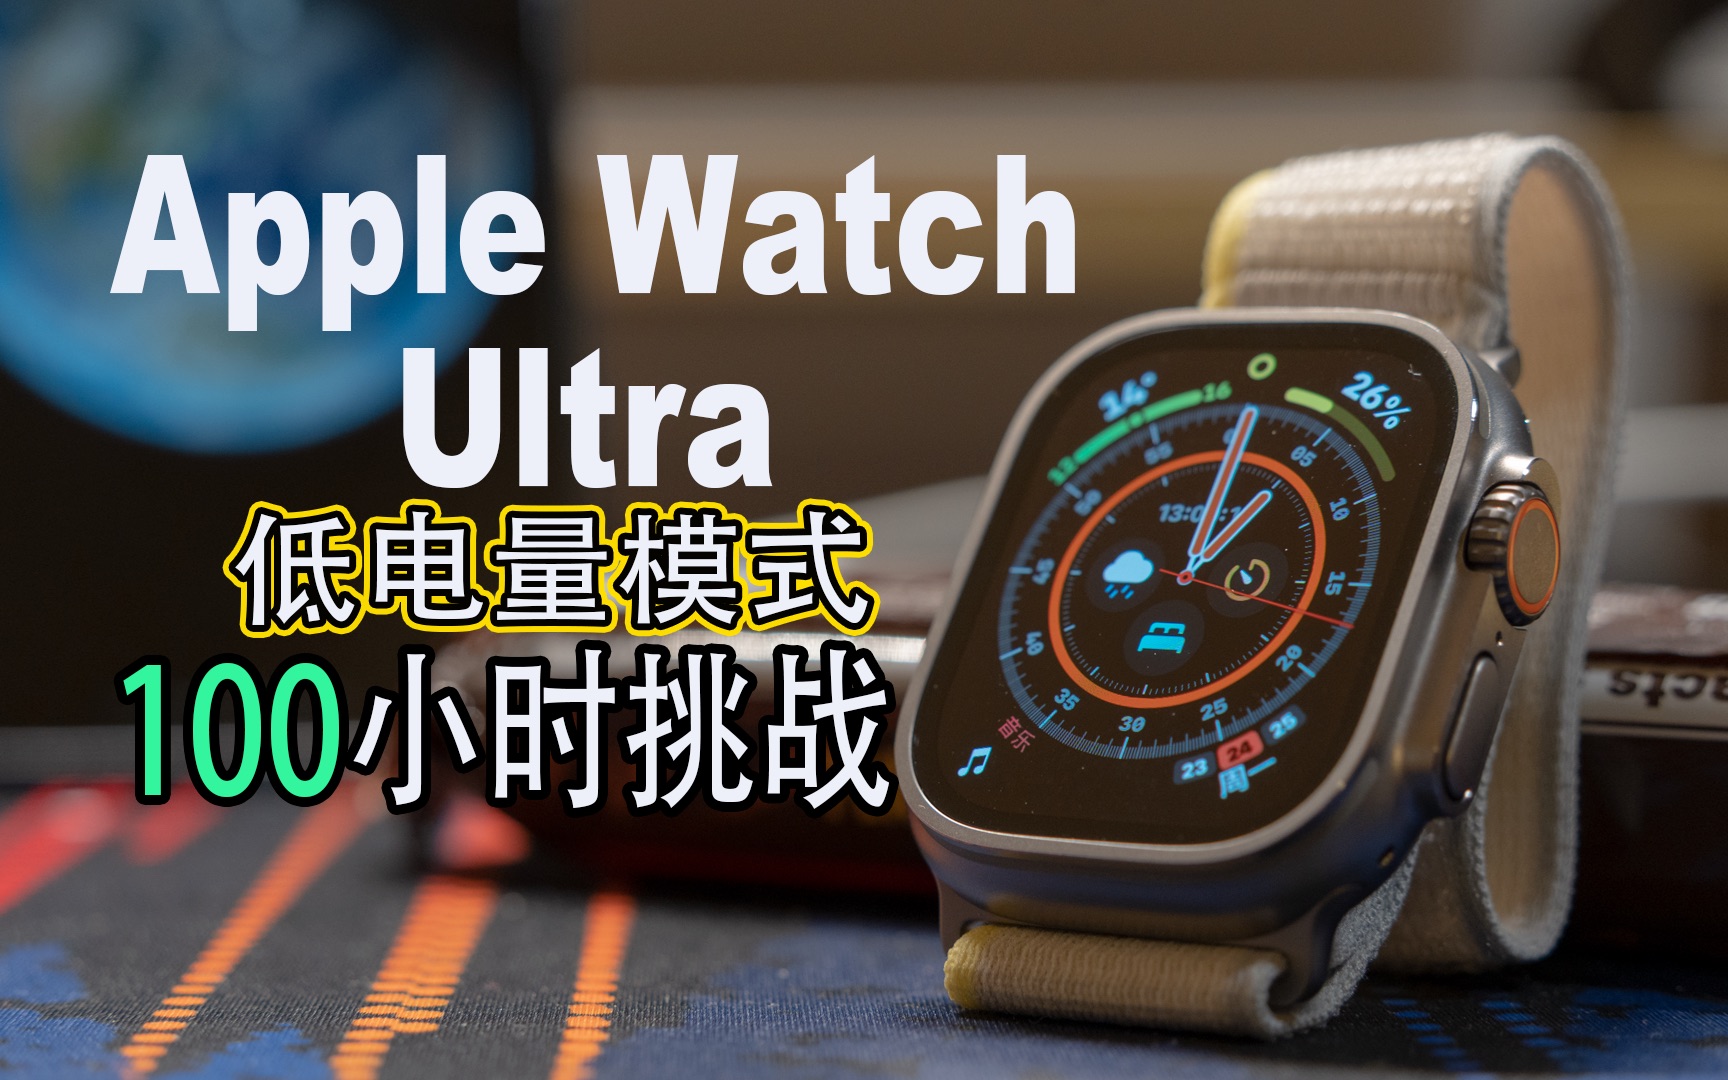 超出预期!Apple Watch Ultra 100小时续航挑战成功 低电量模式